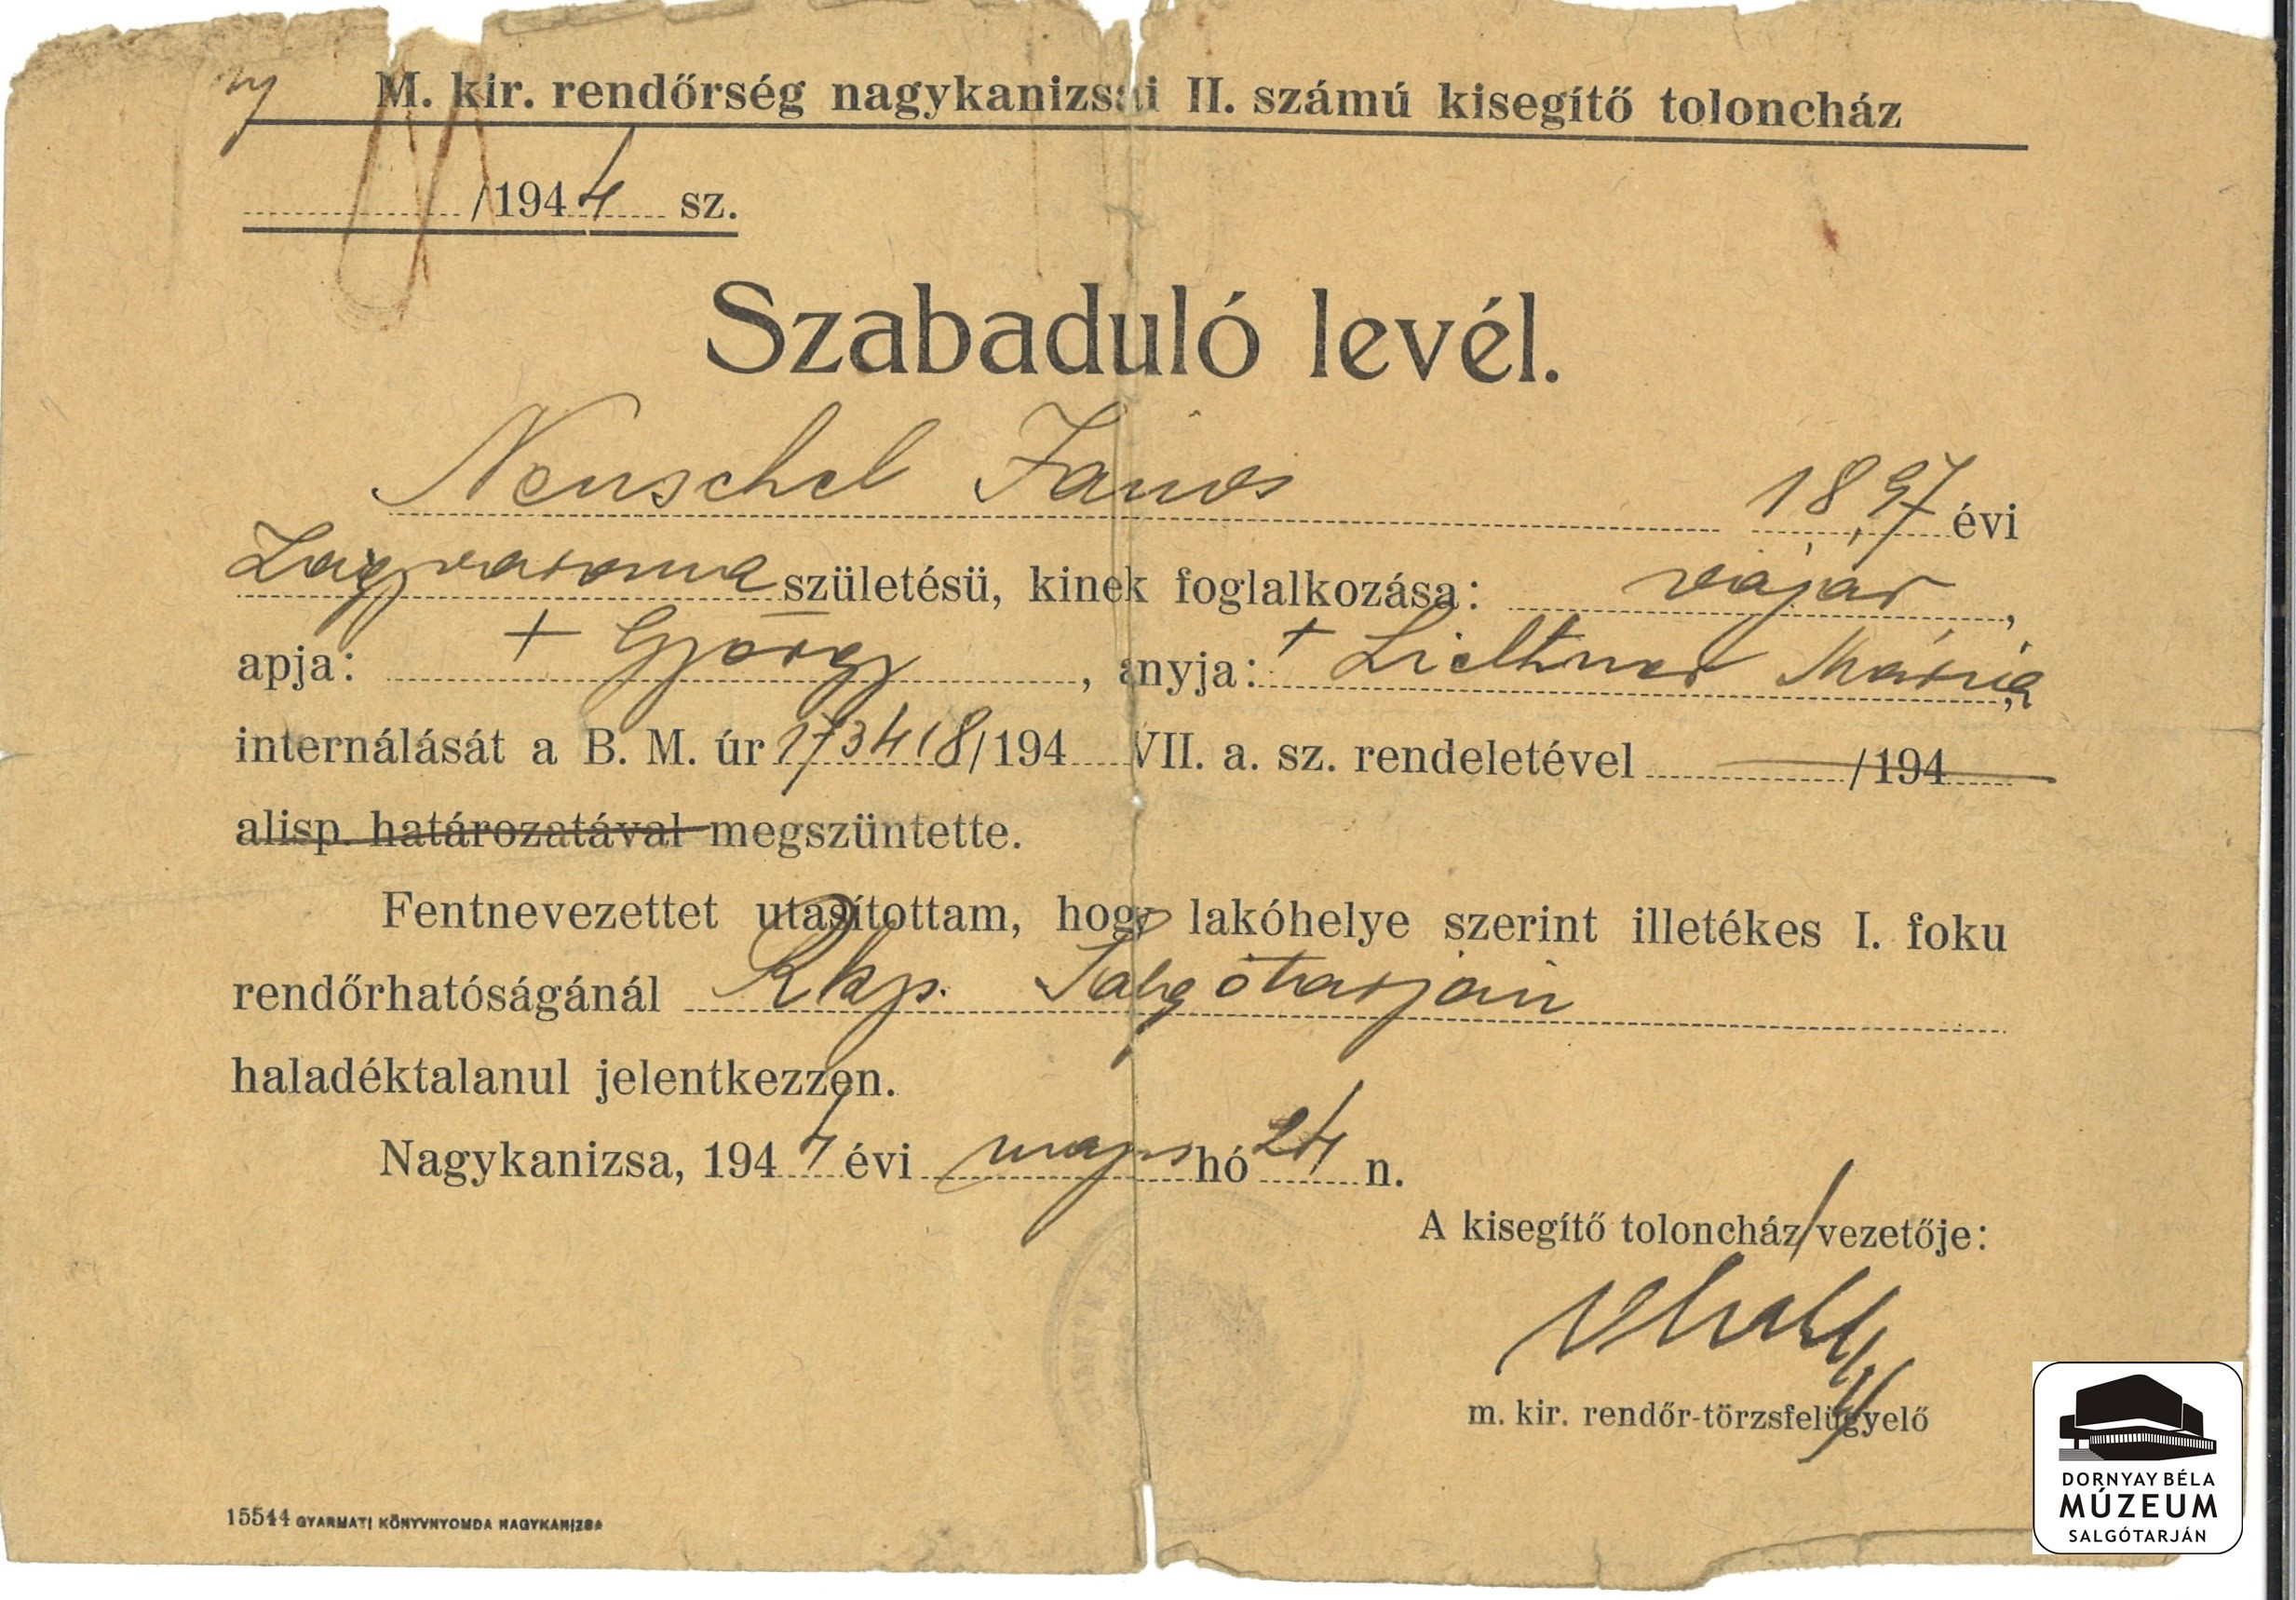 Neuschek János vájár internálását (Nagykanizsa) megszüntetik (Dornyay Béla Múzeum, Salgótarján CC BY-NC-SA)